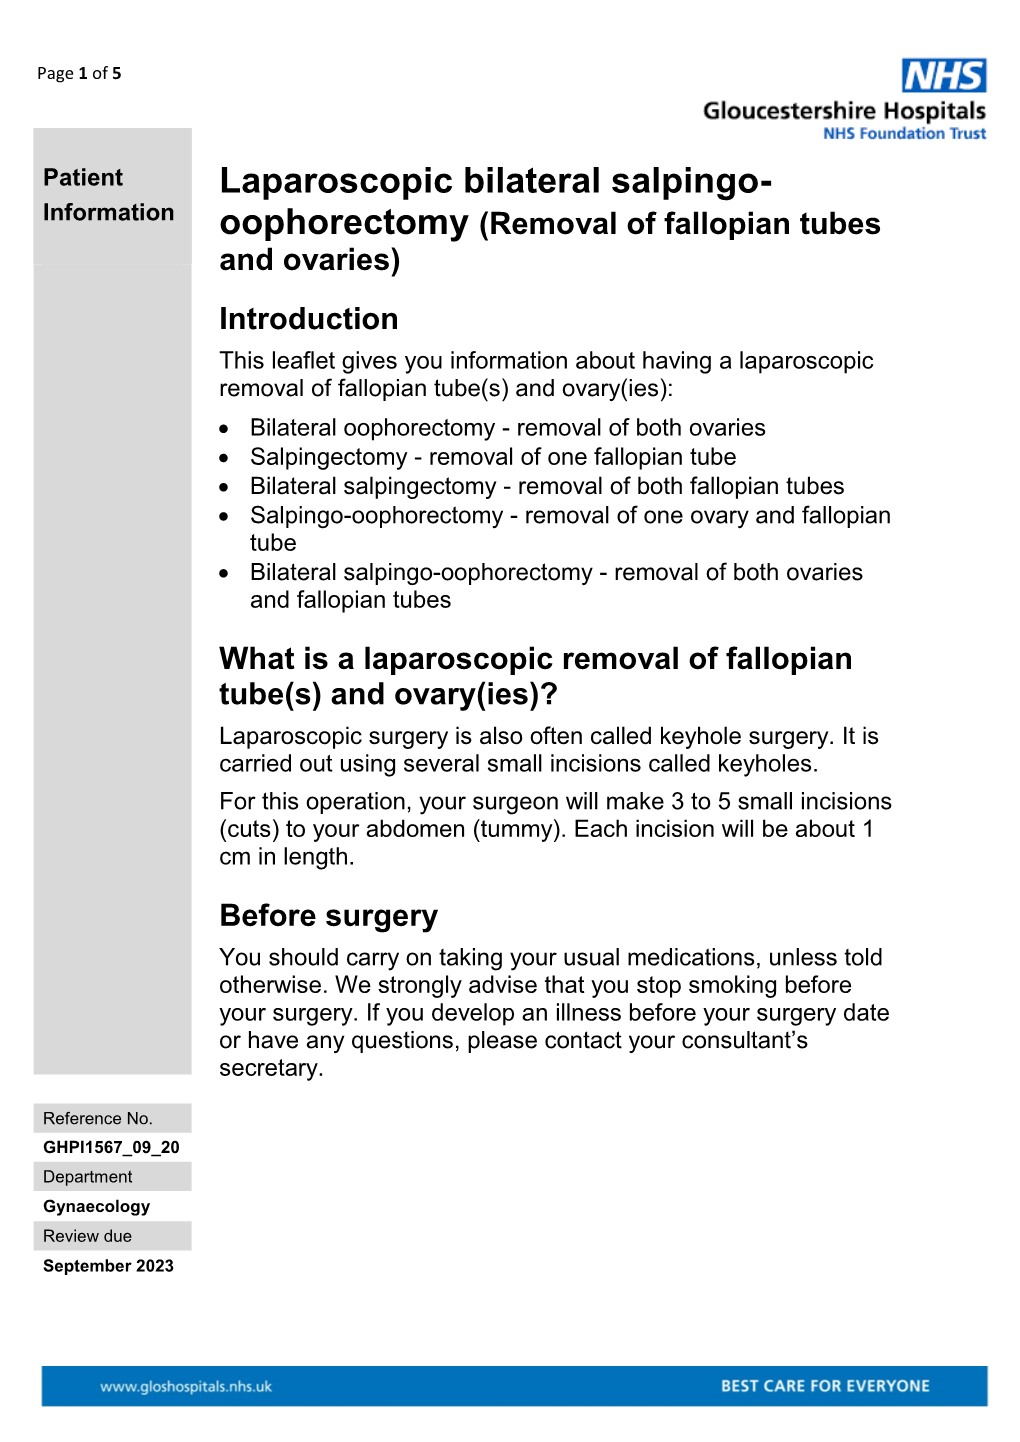 Laparoscopic Bilateral Salpingo- Oophorectomy